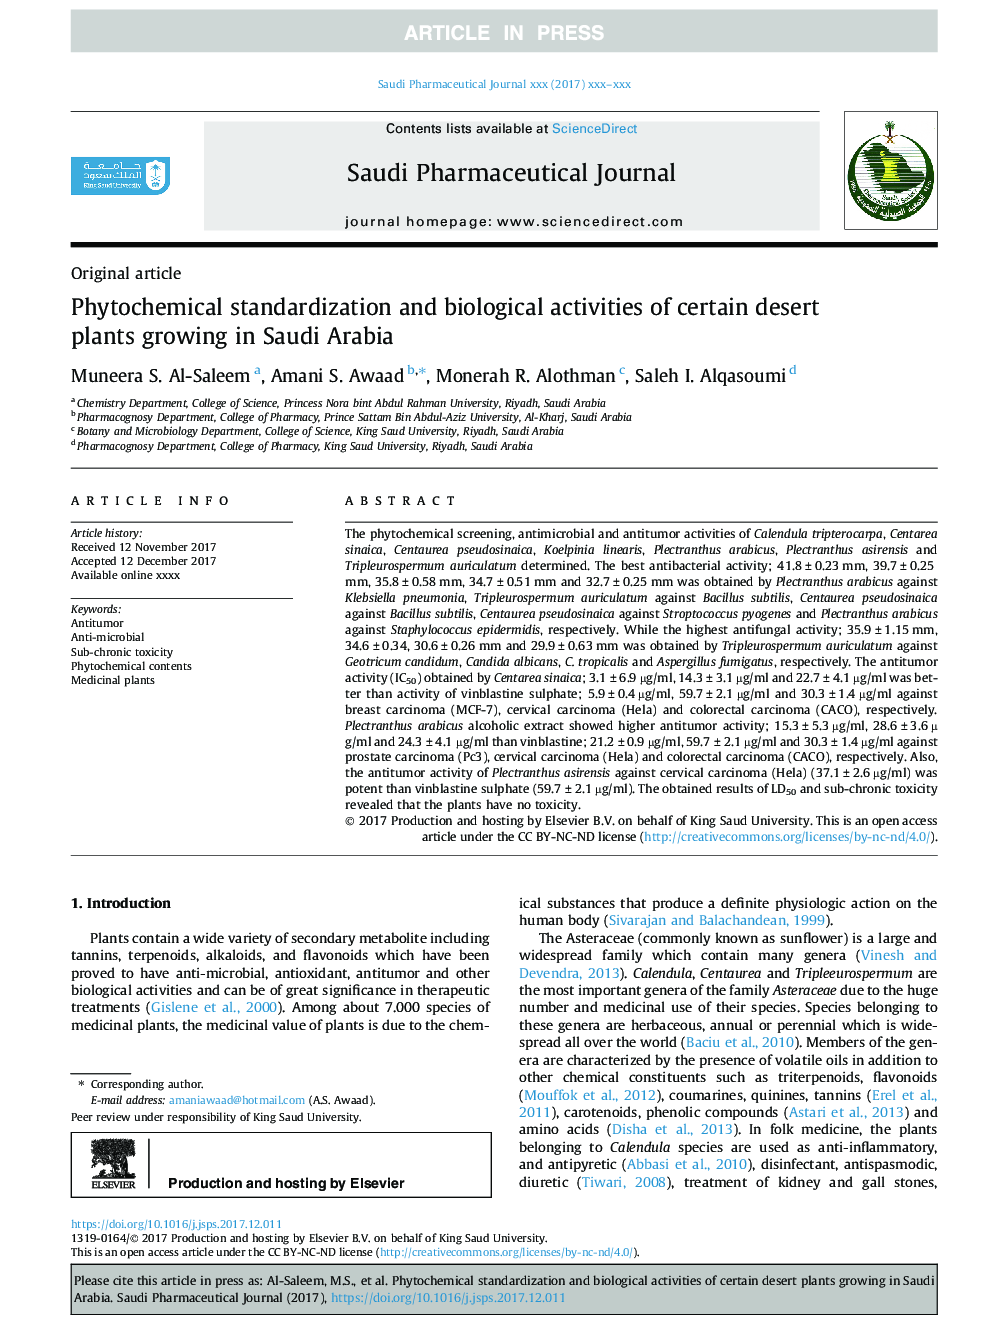 استاندارد سازی فیتوشیمیایی و فعالیت های بیولوژیکی برخی از گیاهان بیابانی که در عربستان سعودی رشد می کنند 